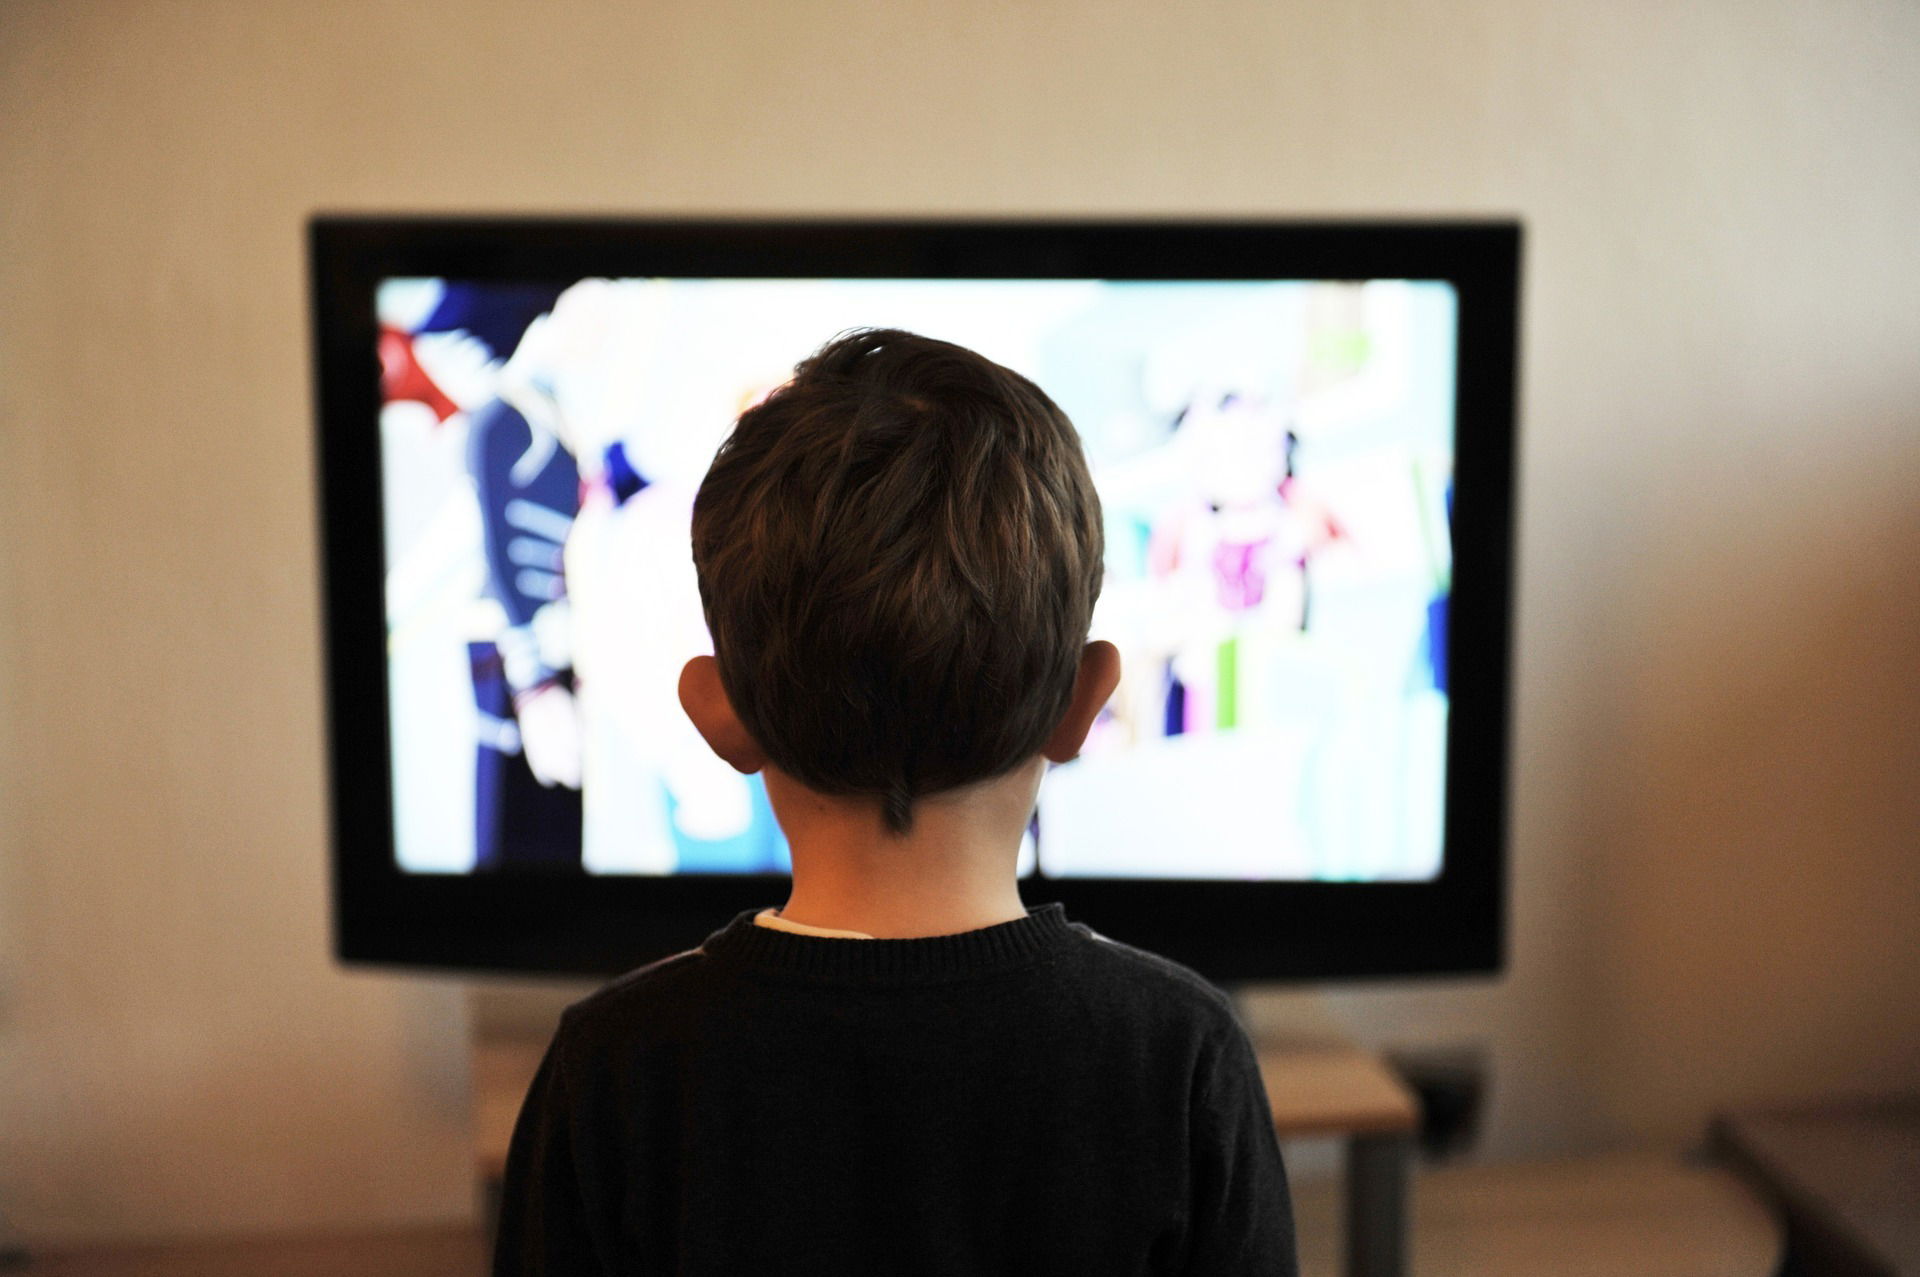 ما تأثير إعلانات الوجبات السريعة على الأطفال؟